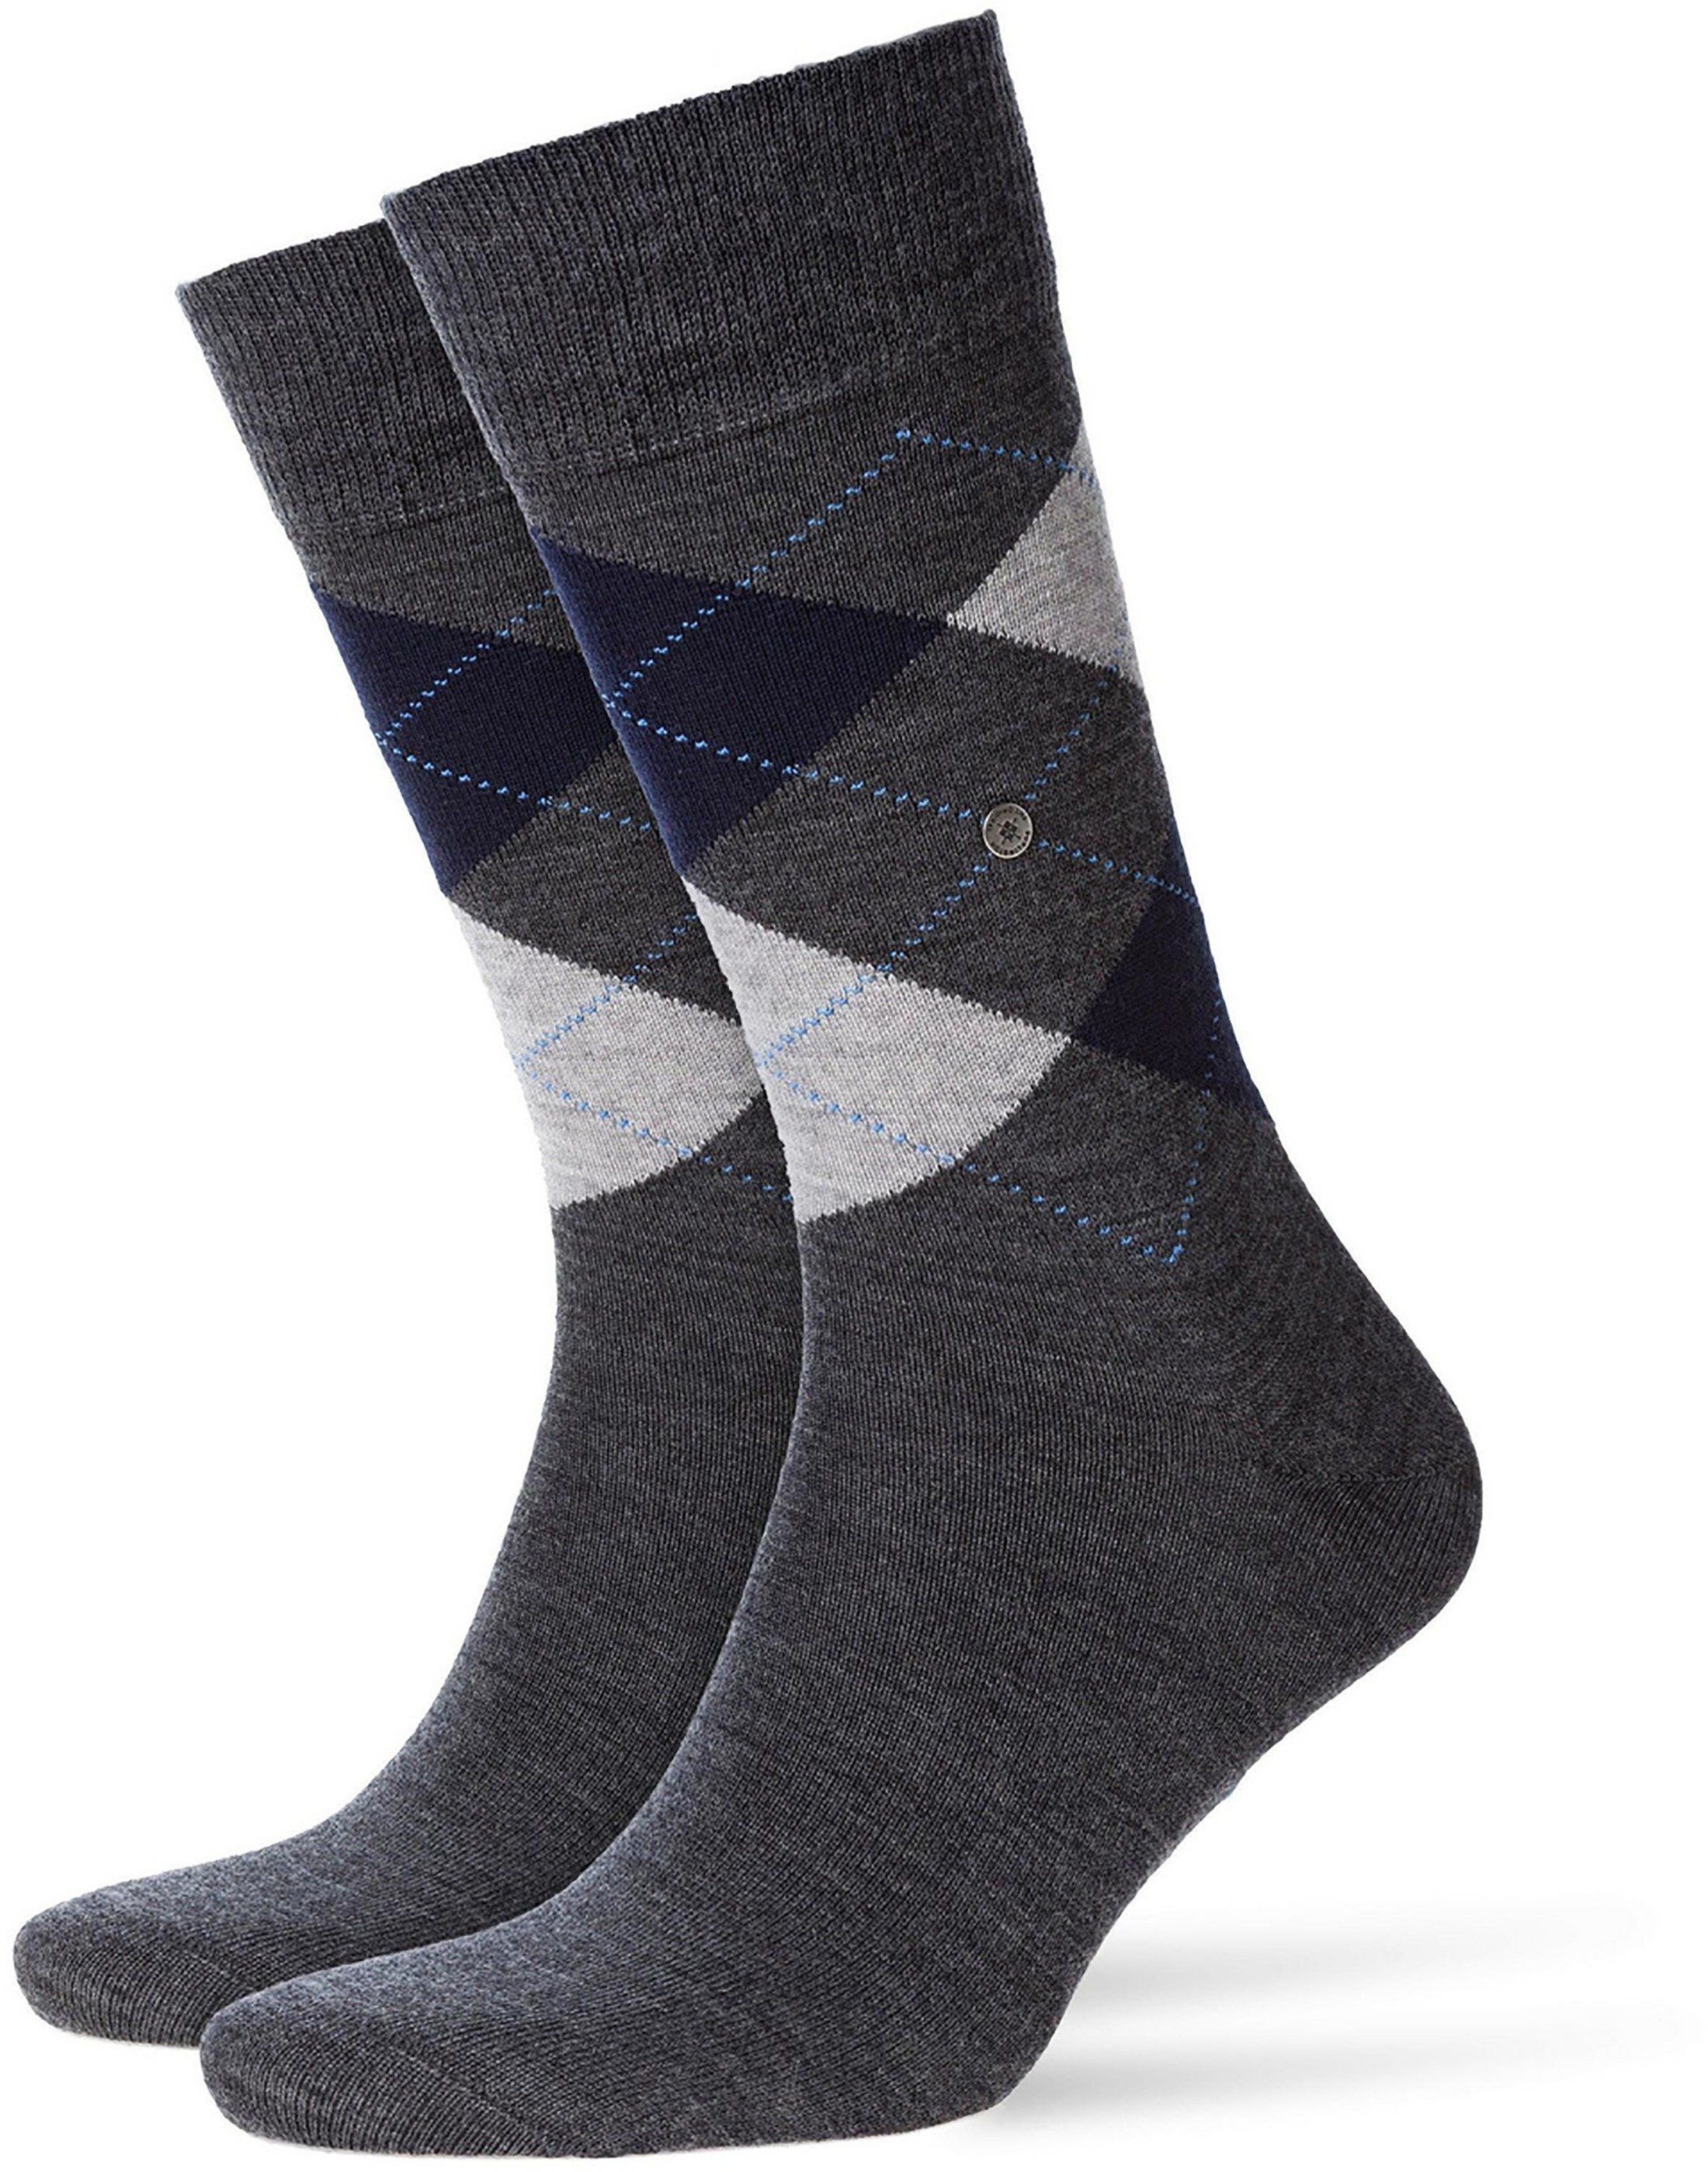 Burlington Socks Edinburgh 3194 Dark Grey Grey size 40-46